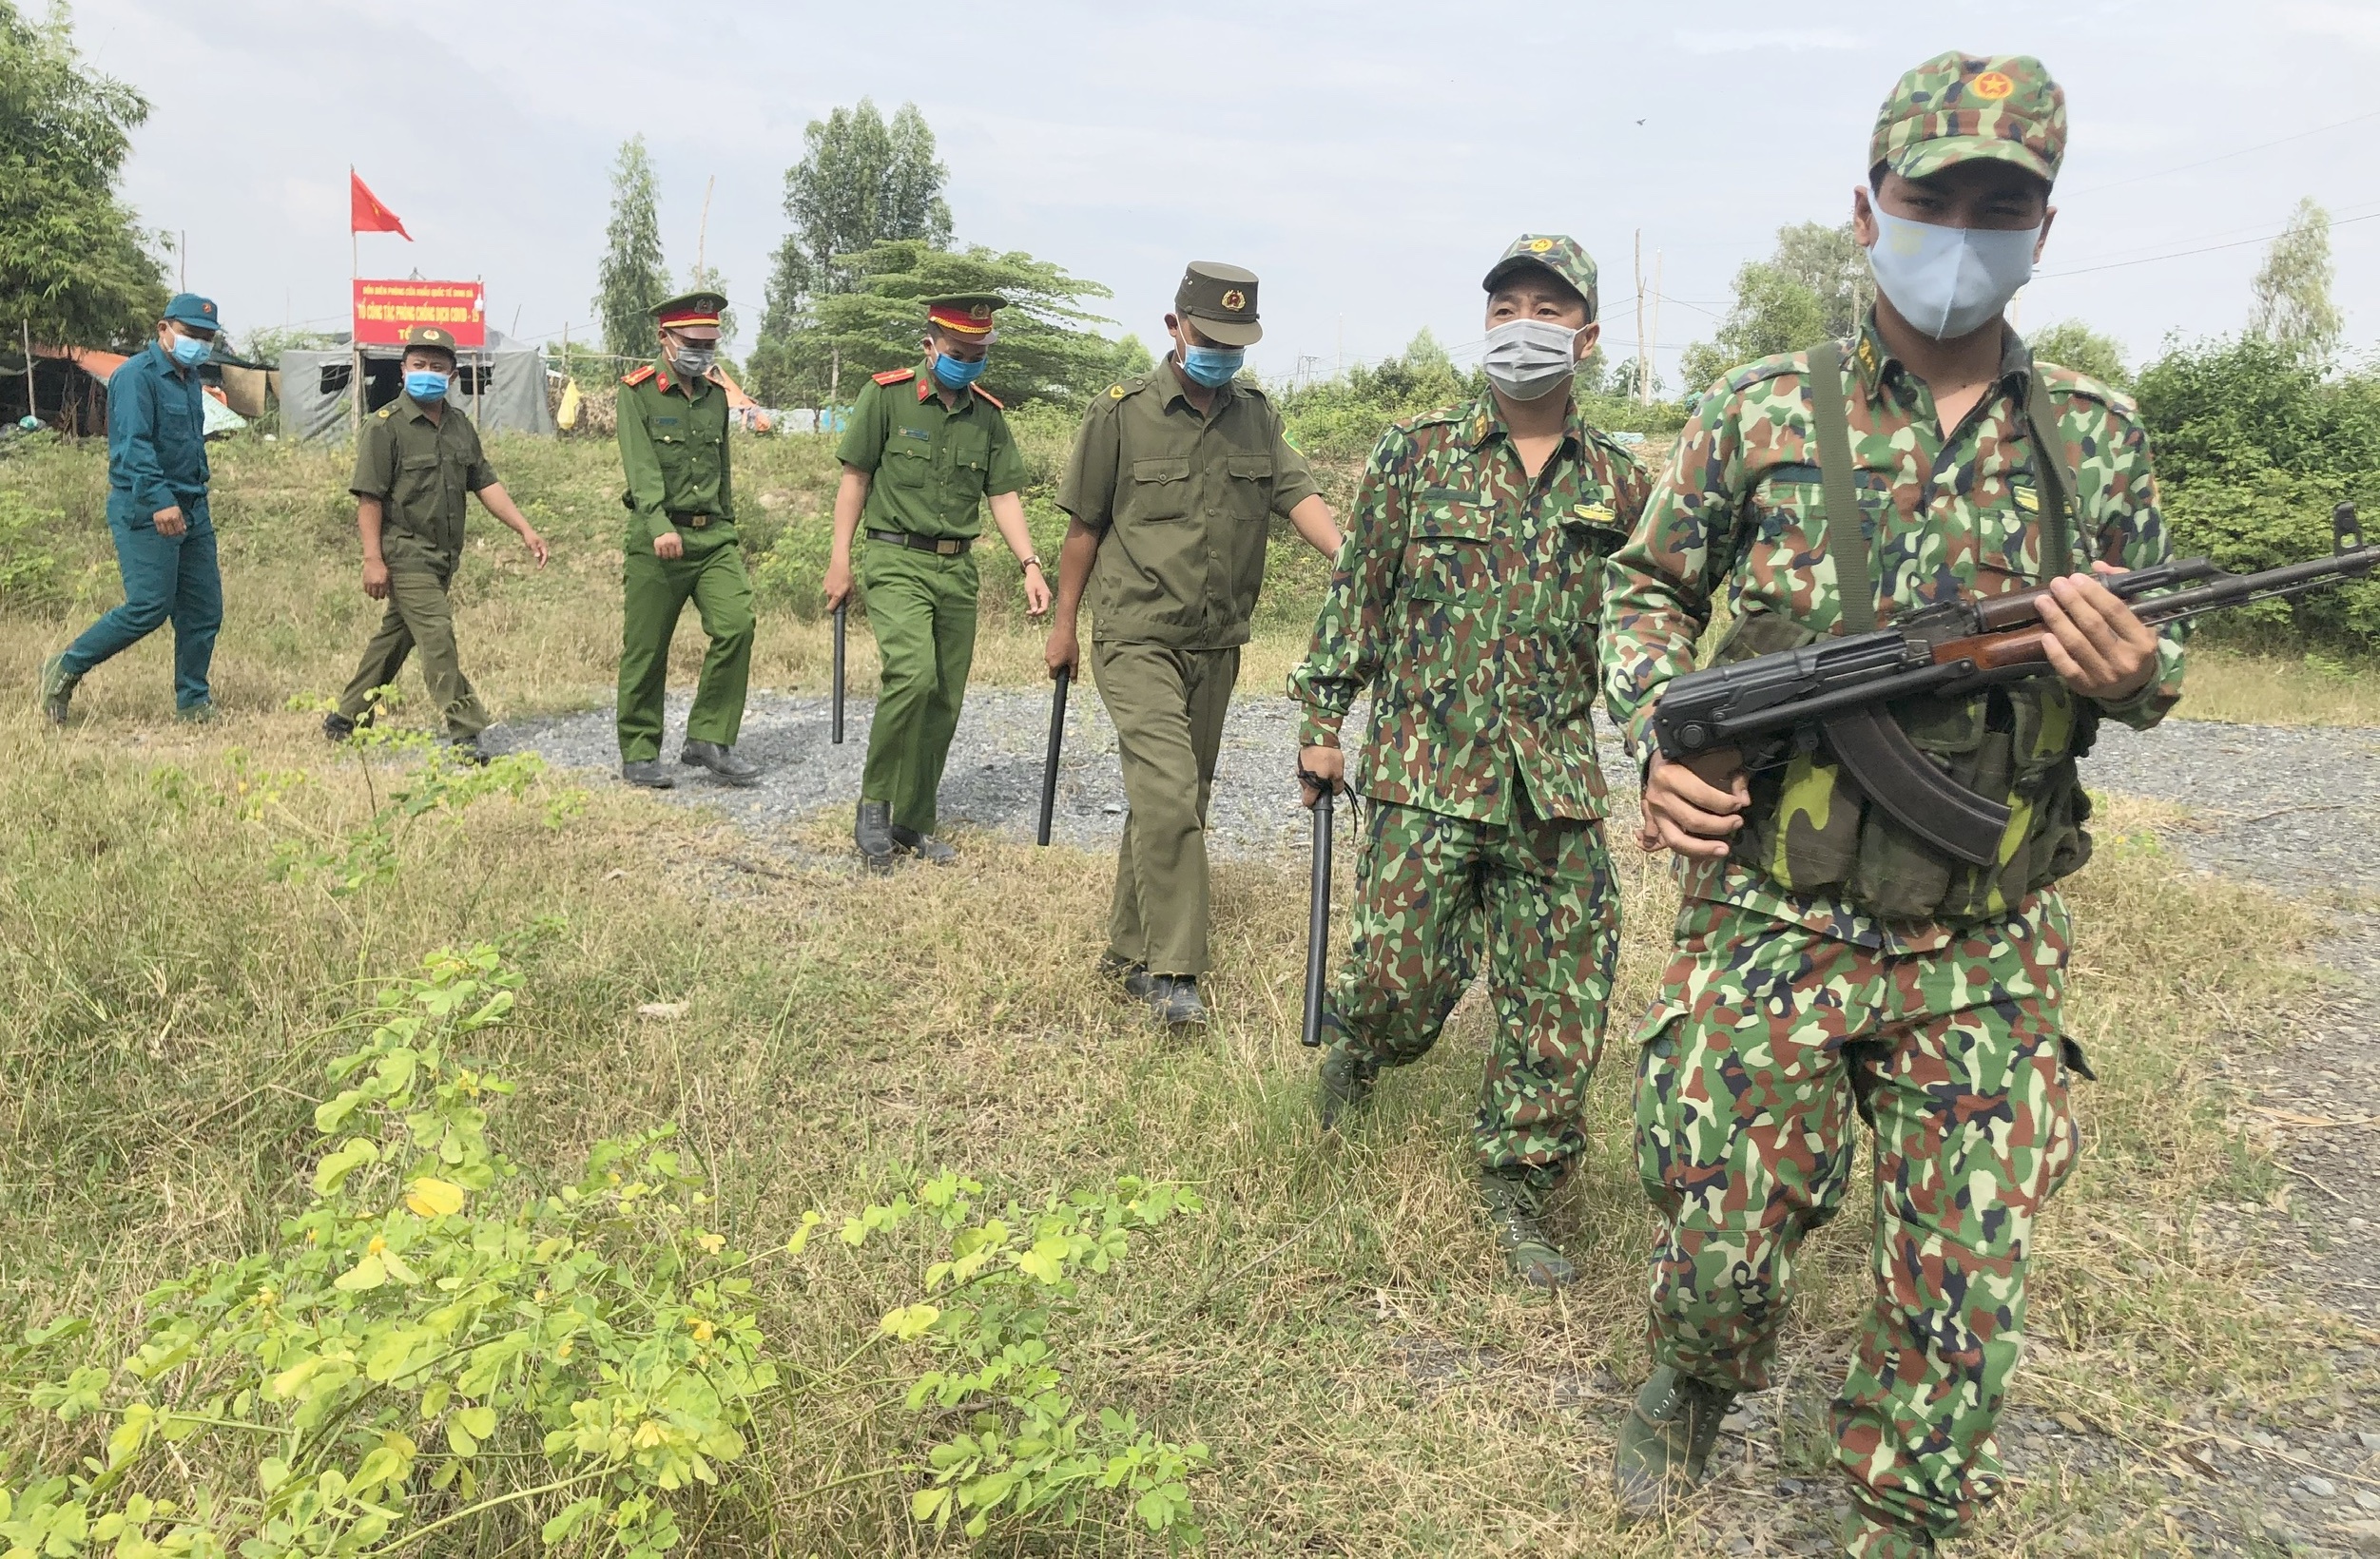 Nguy cơ biến chủng SARS-CoV-2 xâm nhập Việt Nam từ người vượt biên - Ảnh 1.